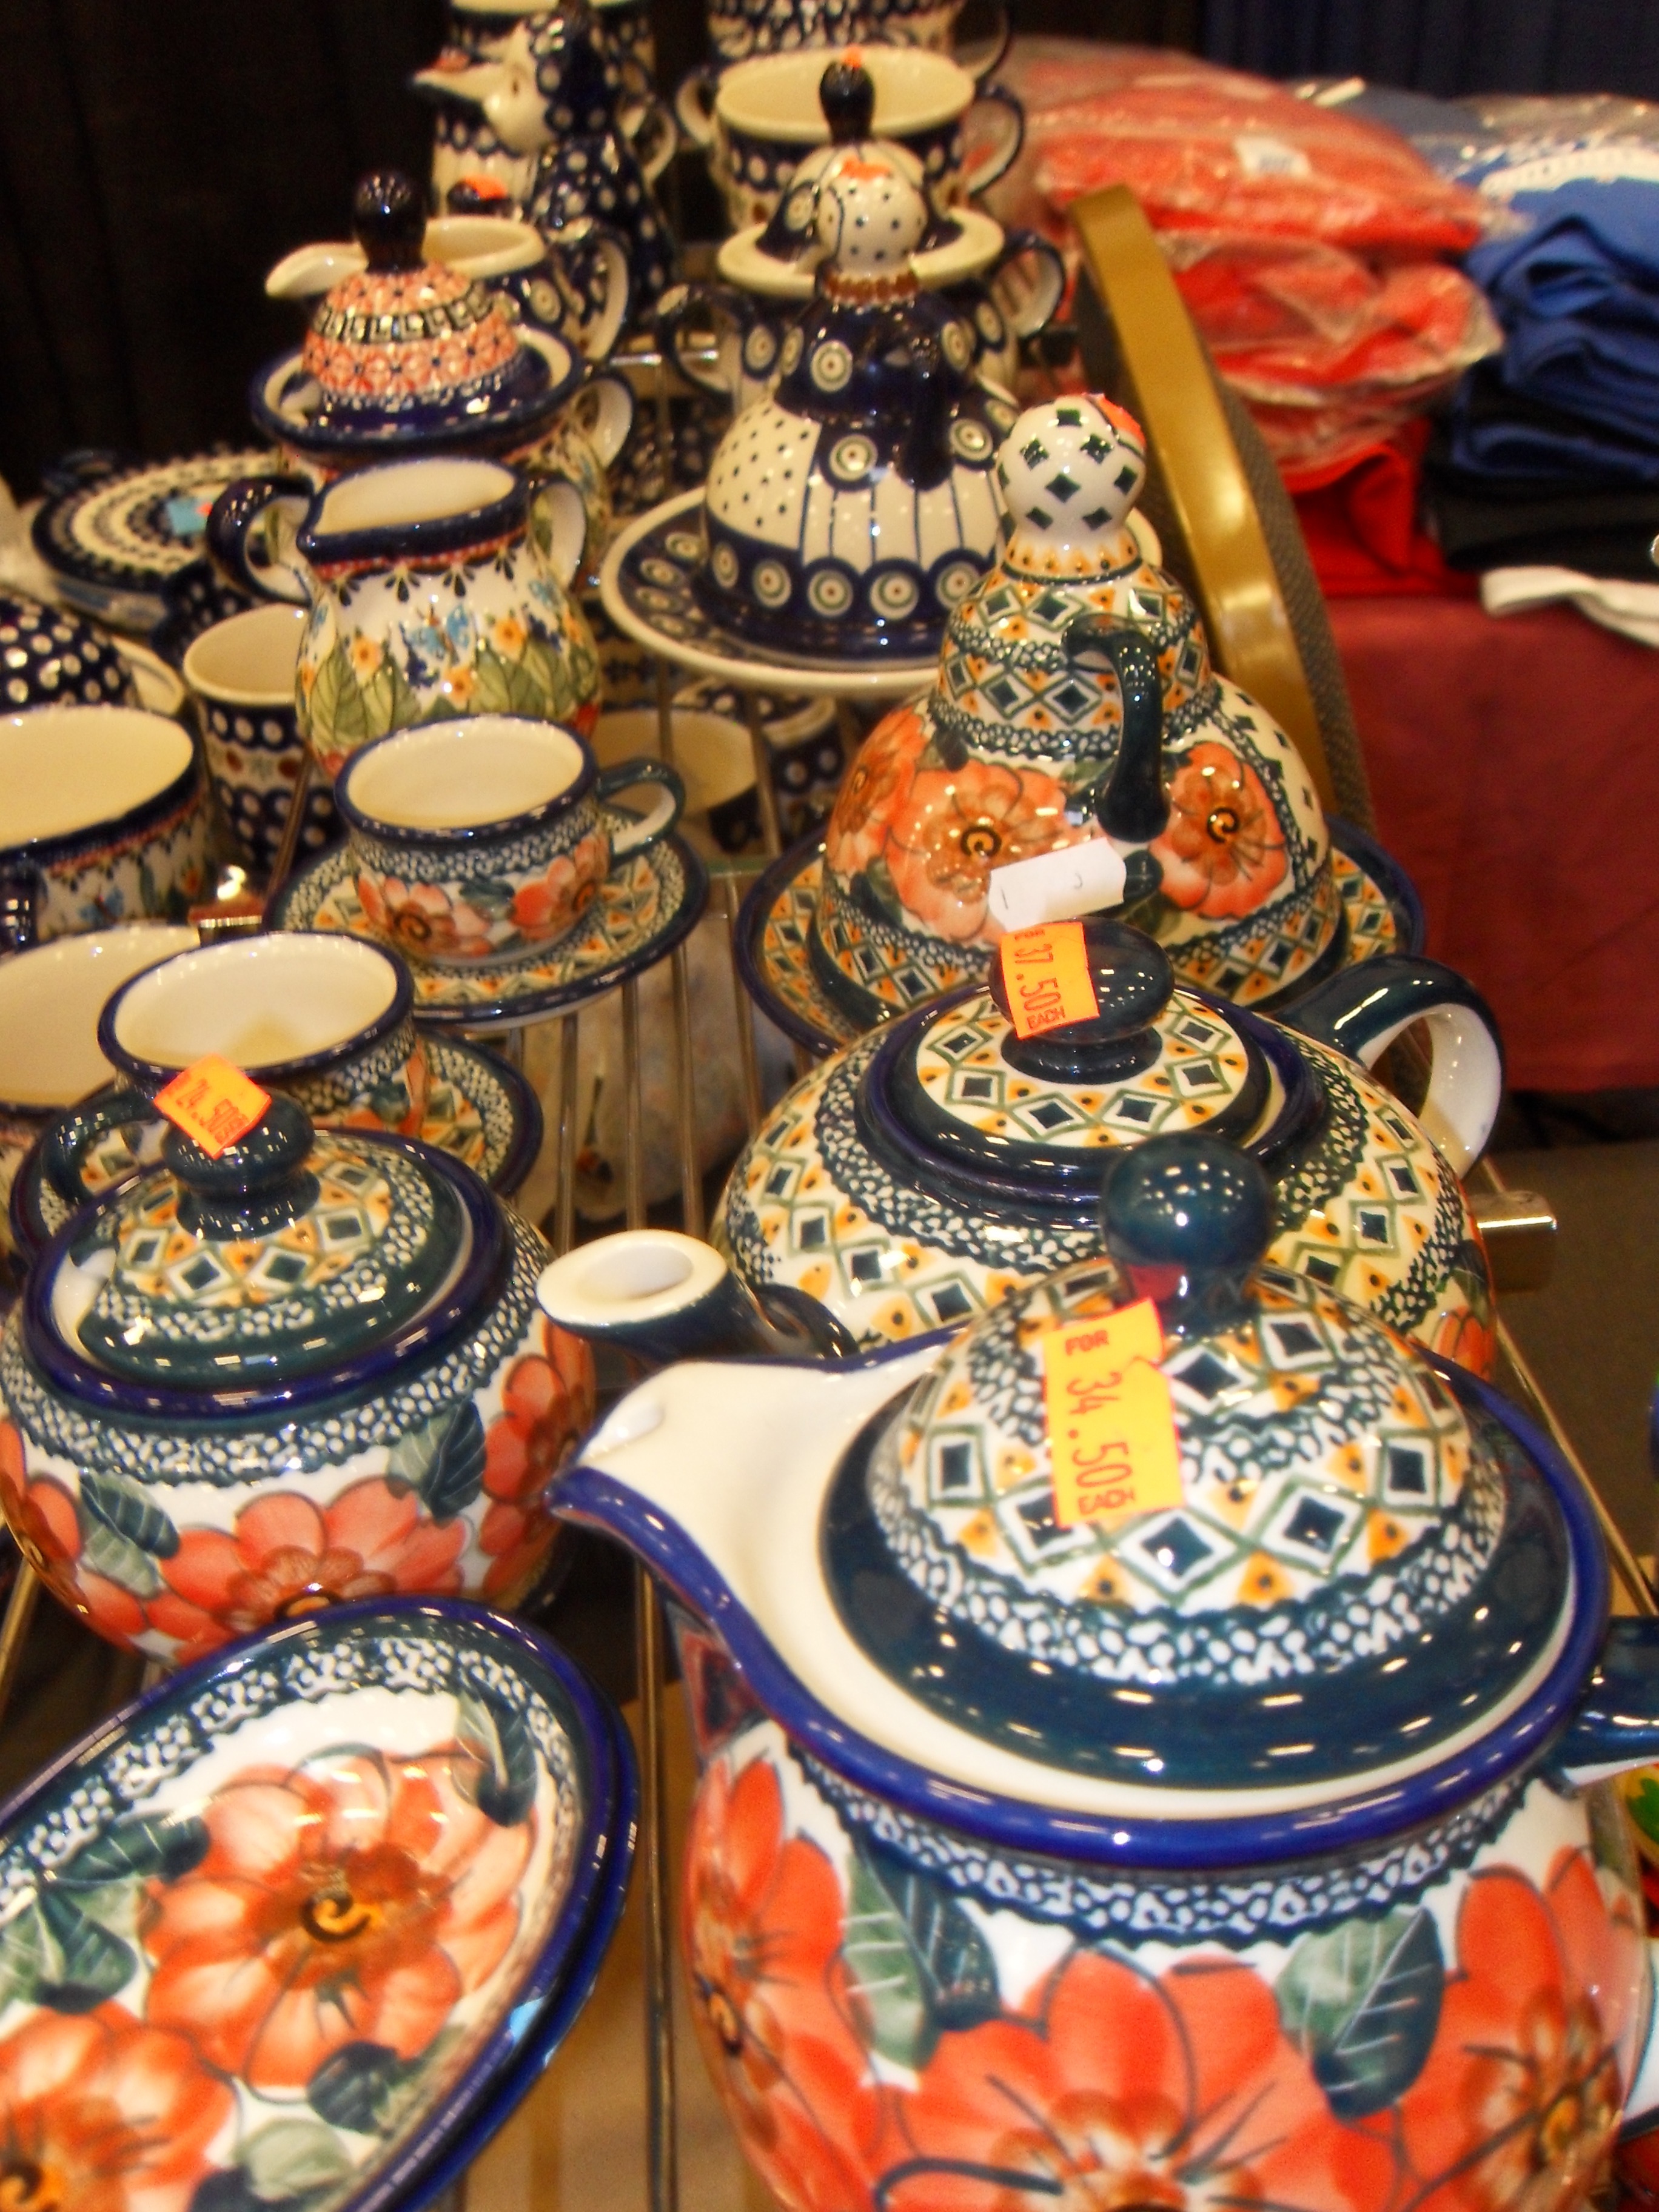 Ceramics from Italy